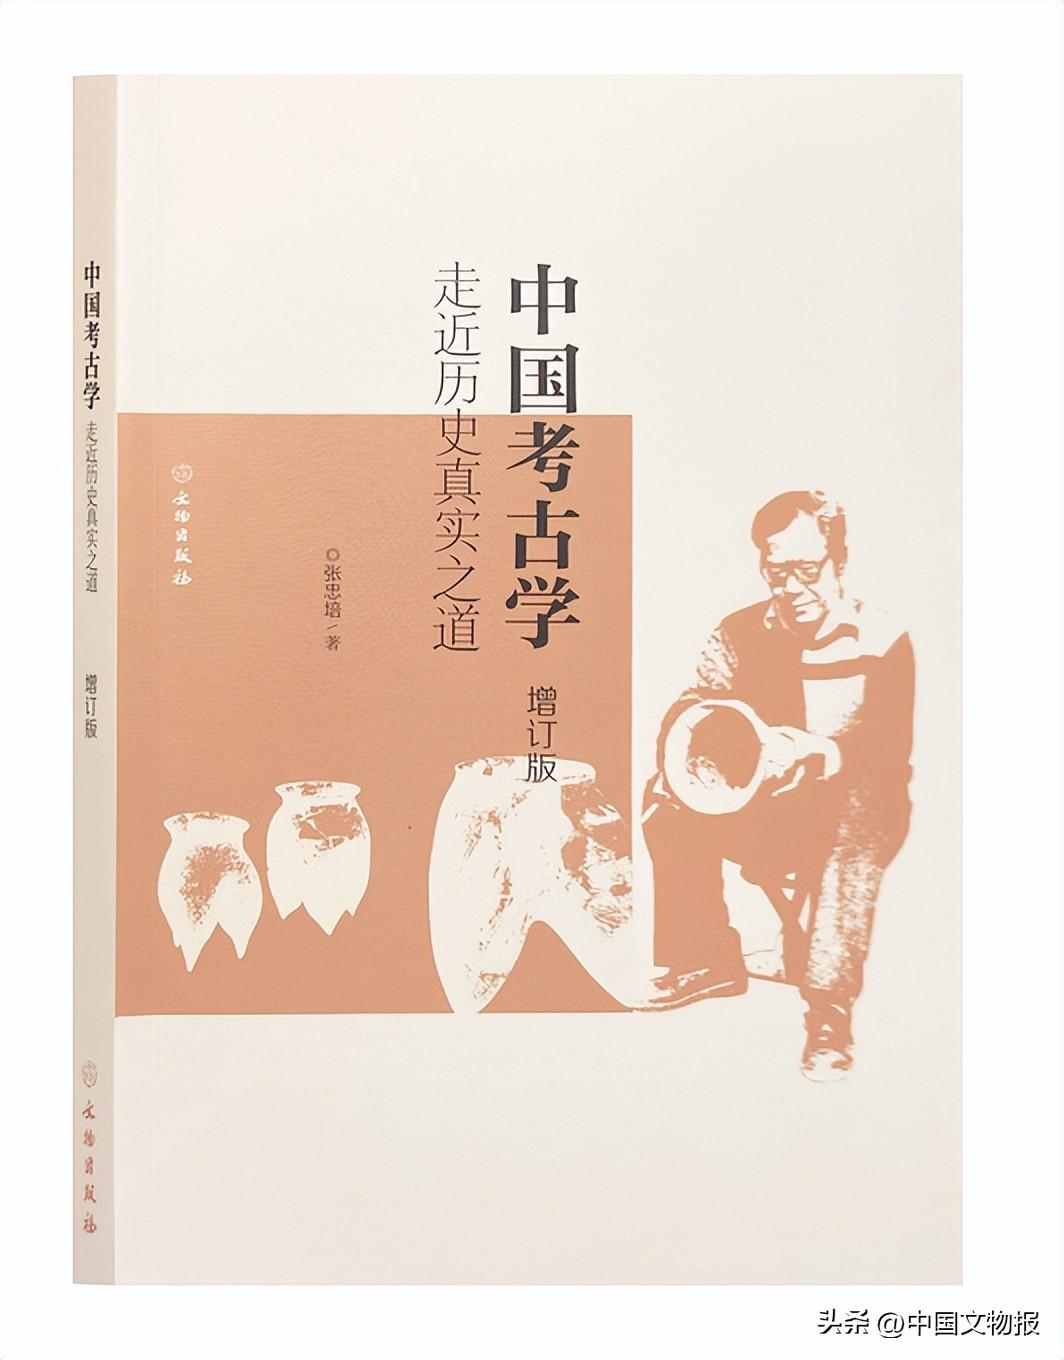 张忠培《中国考古学：走近历史真实之道》（增订版）出版笔谈